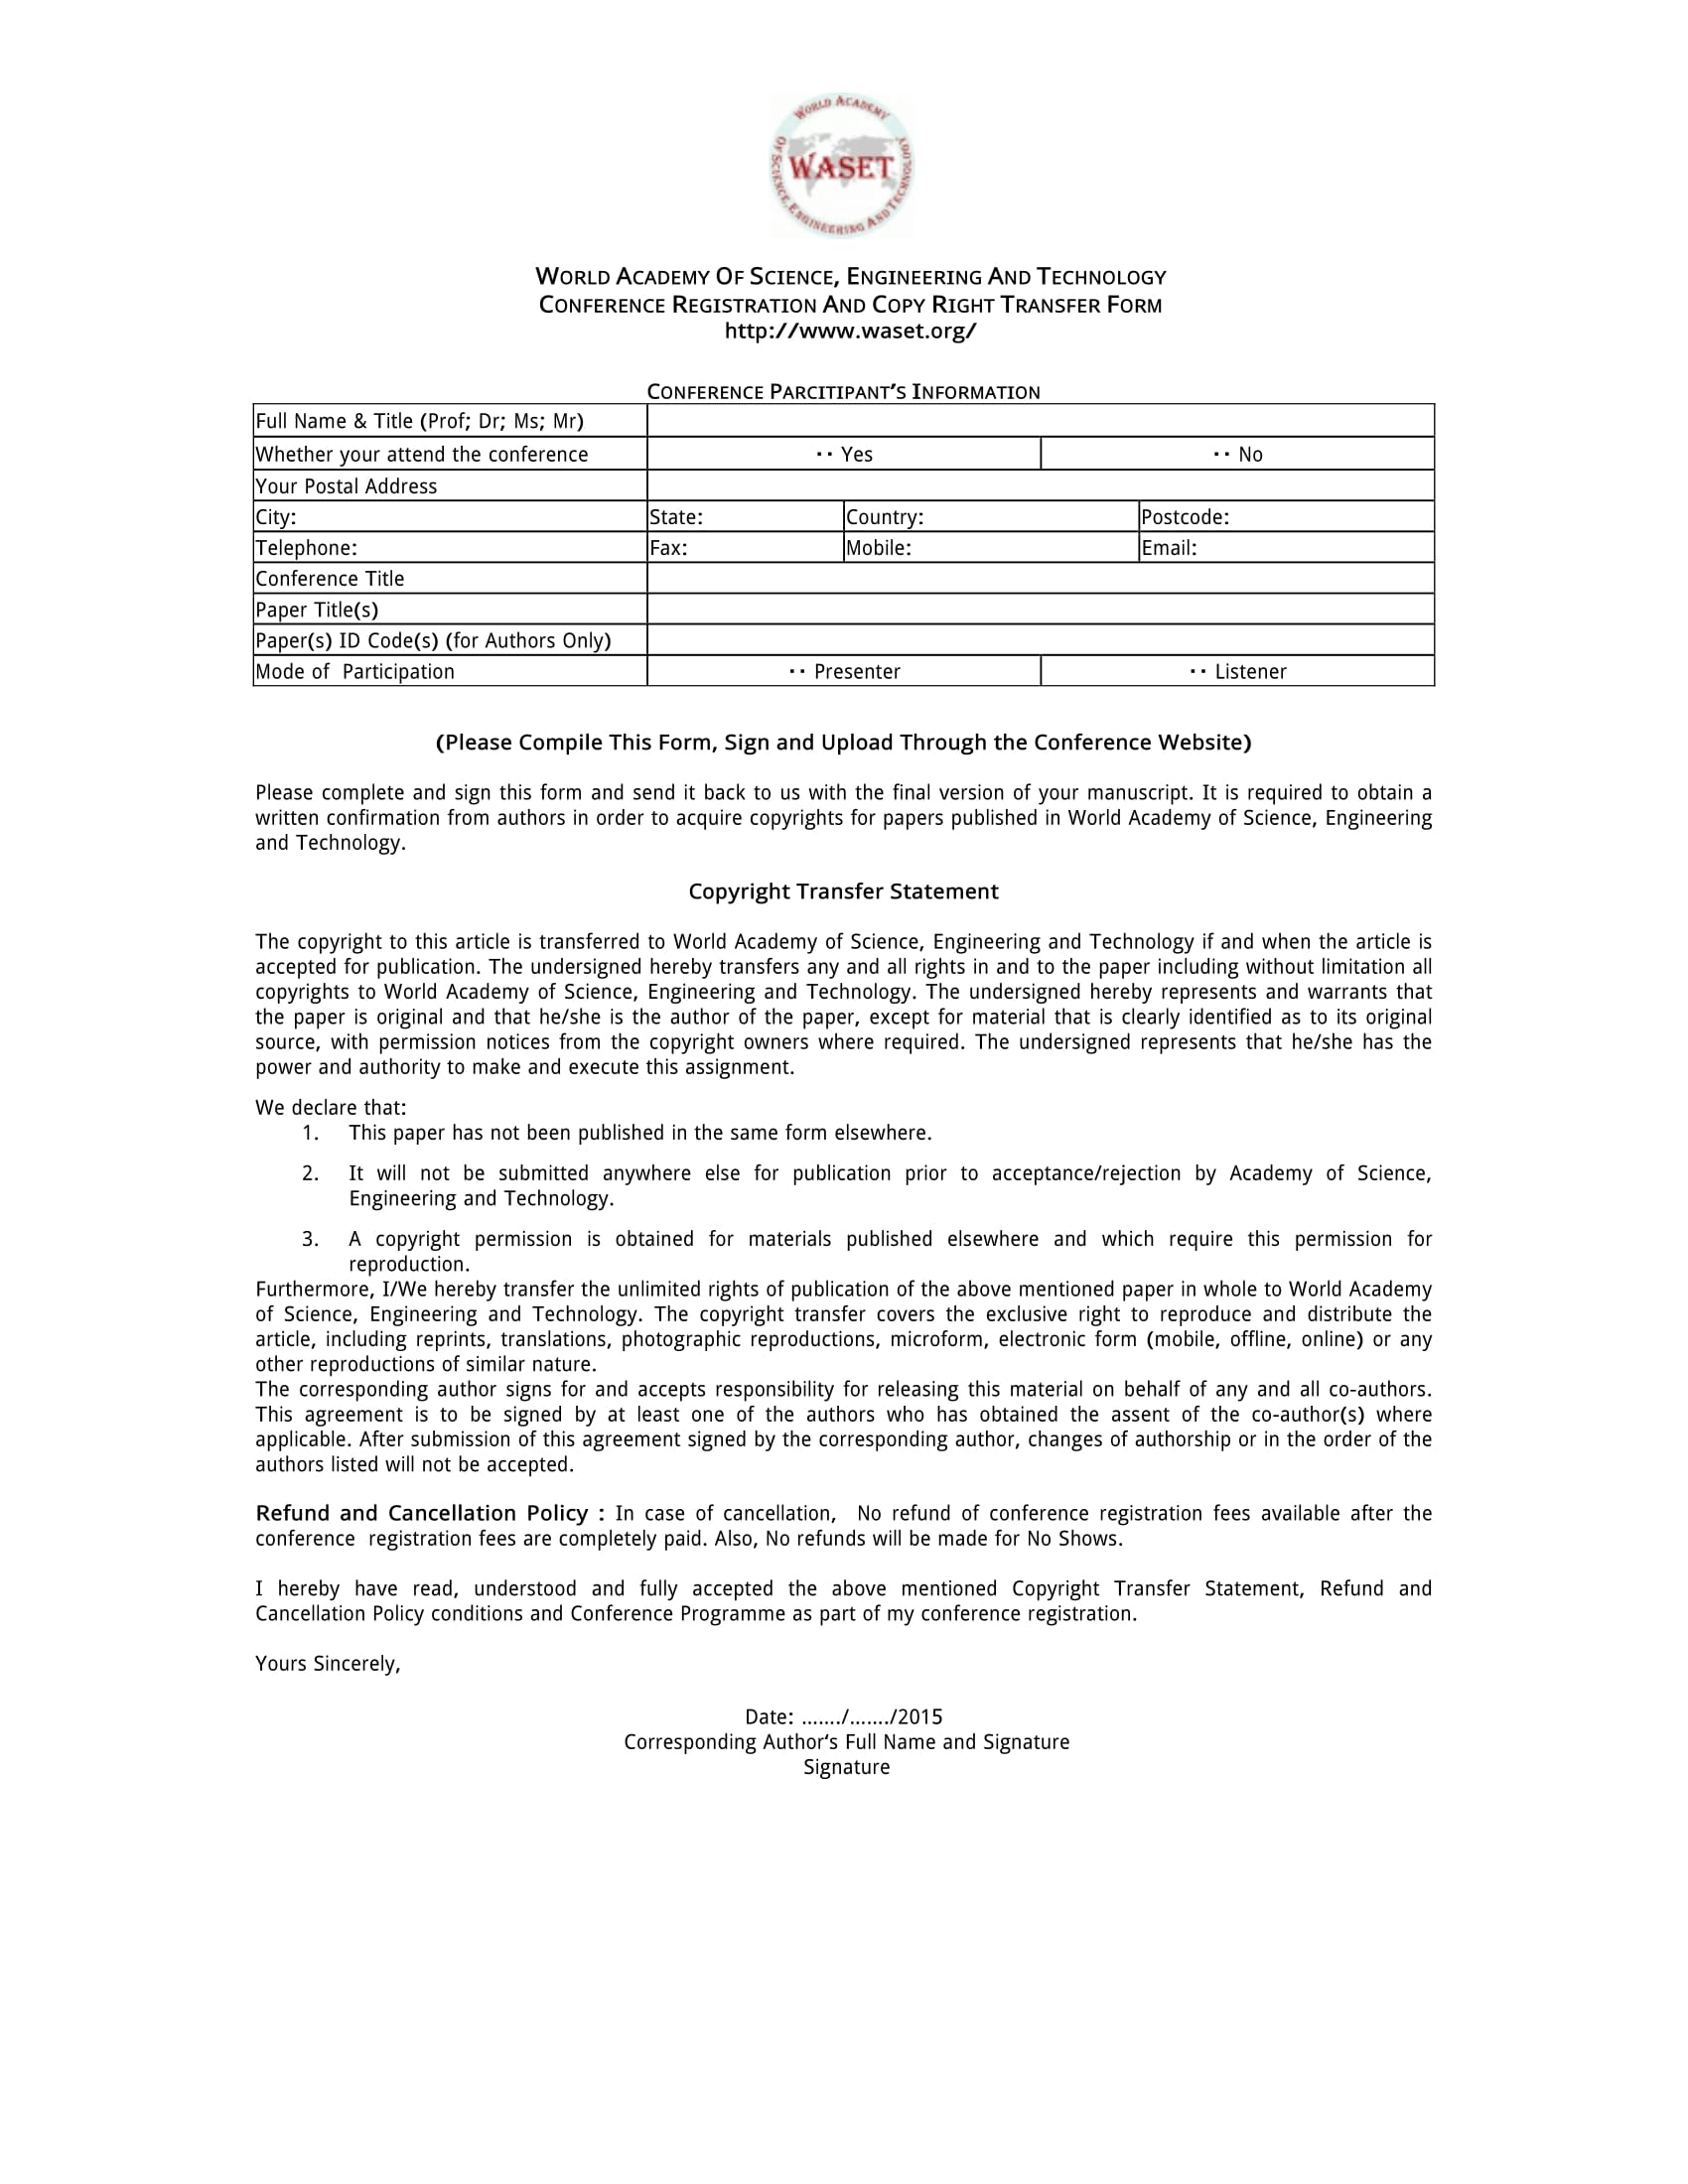 conference copyright transfer registration form 1